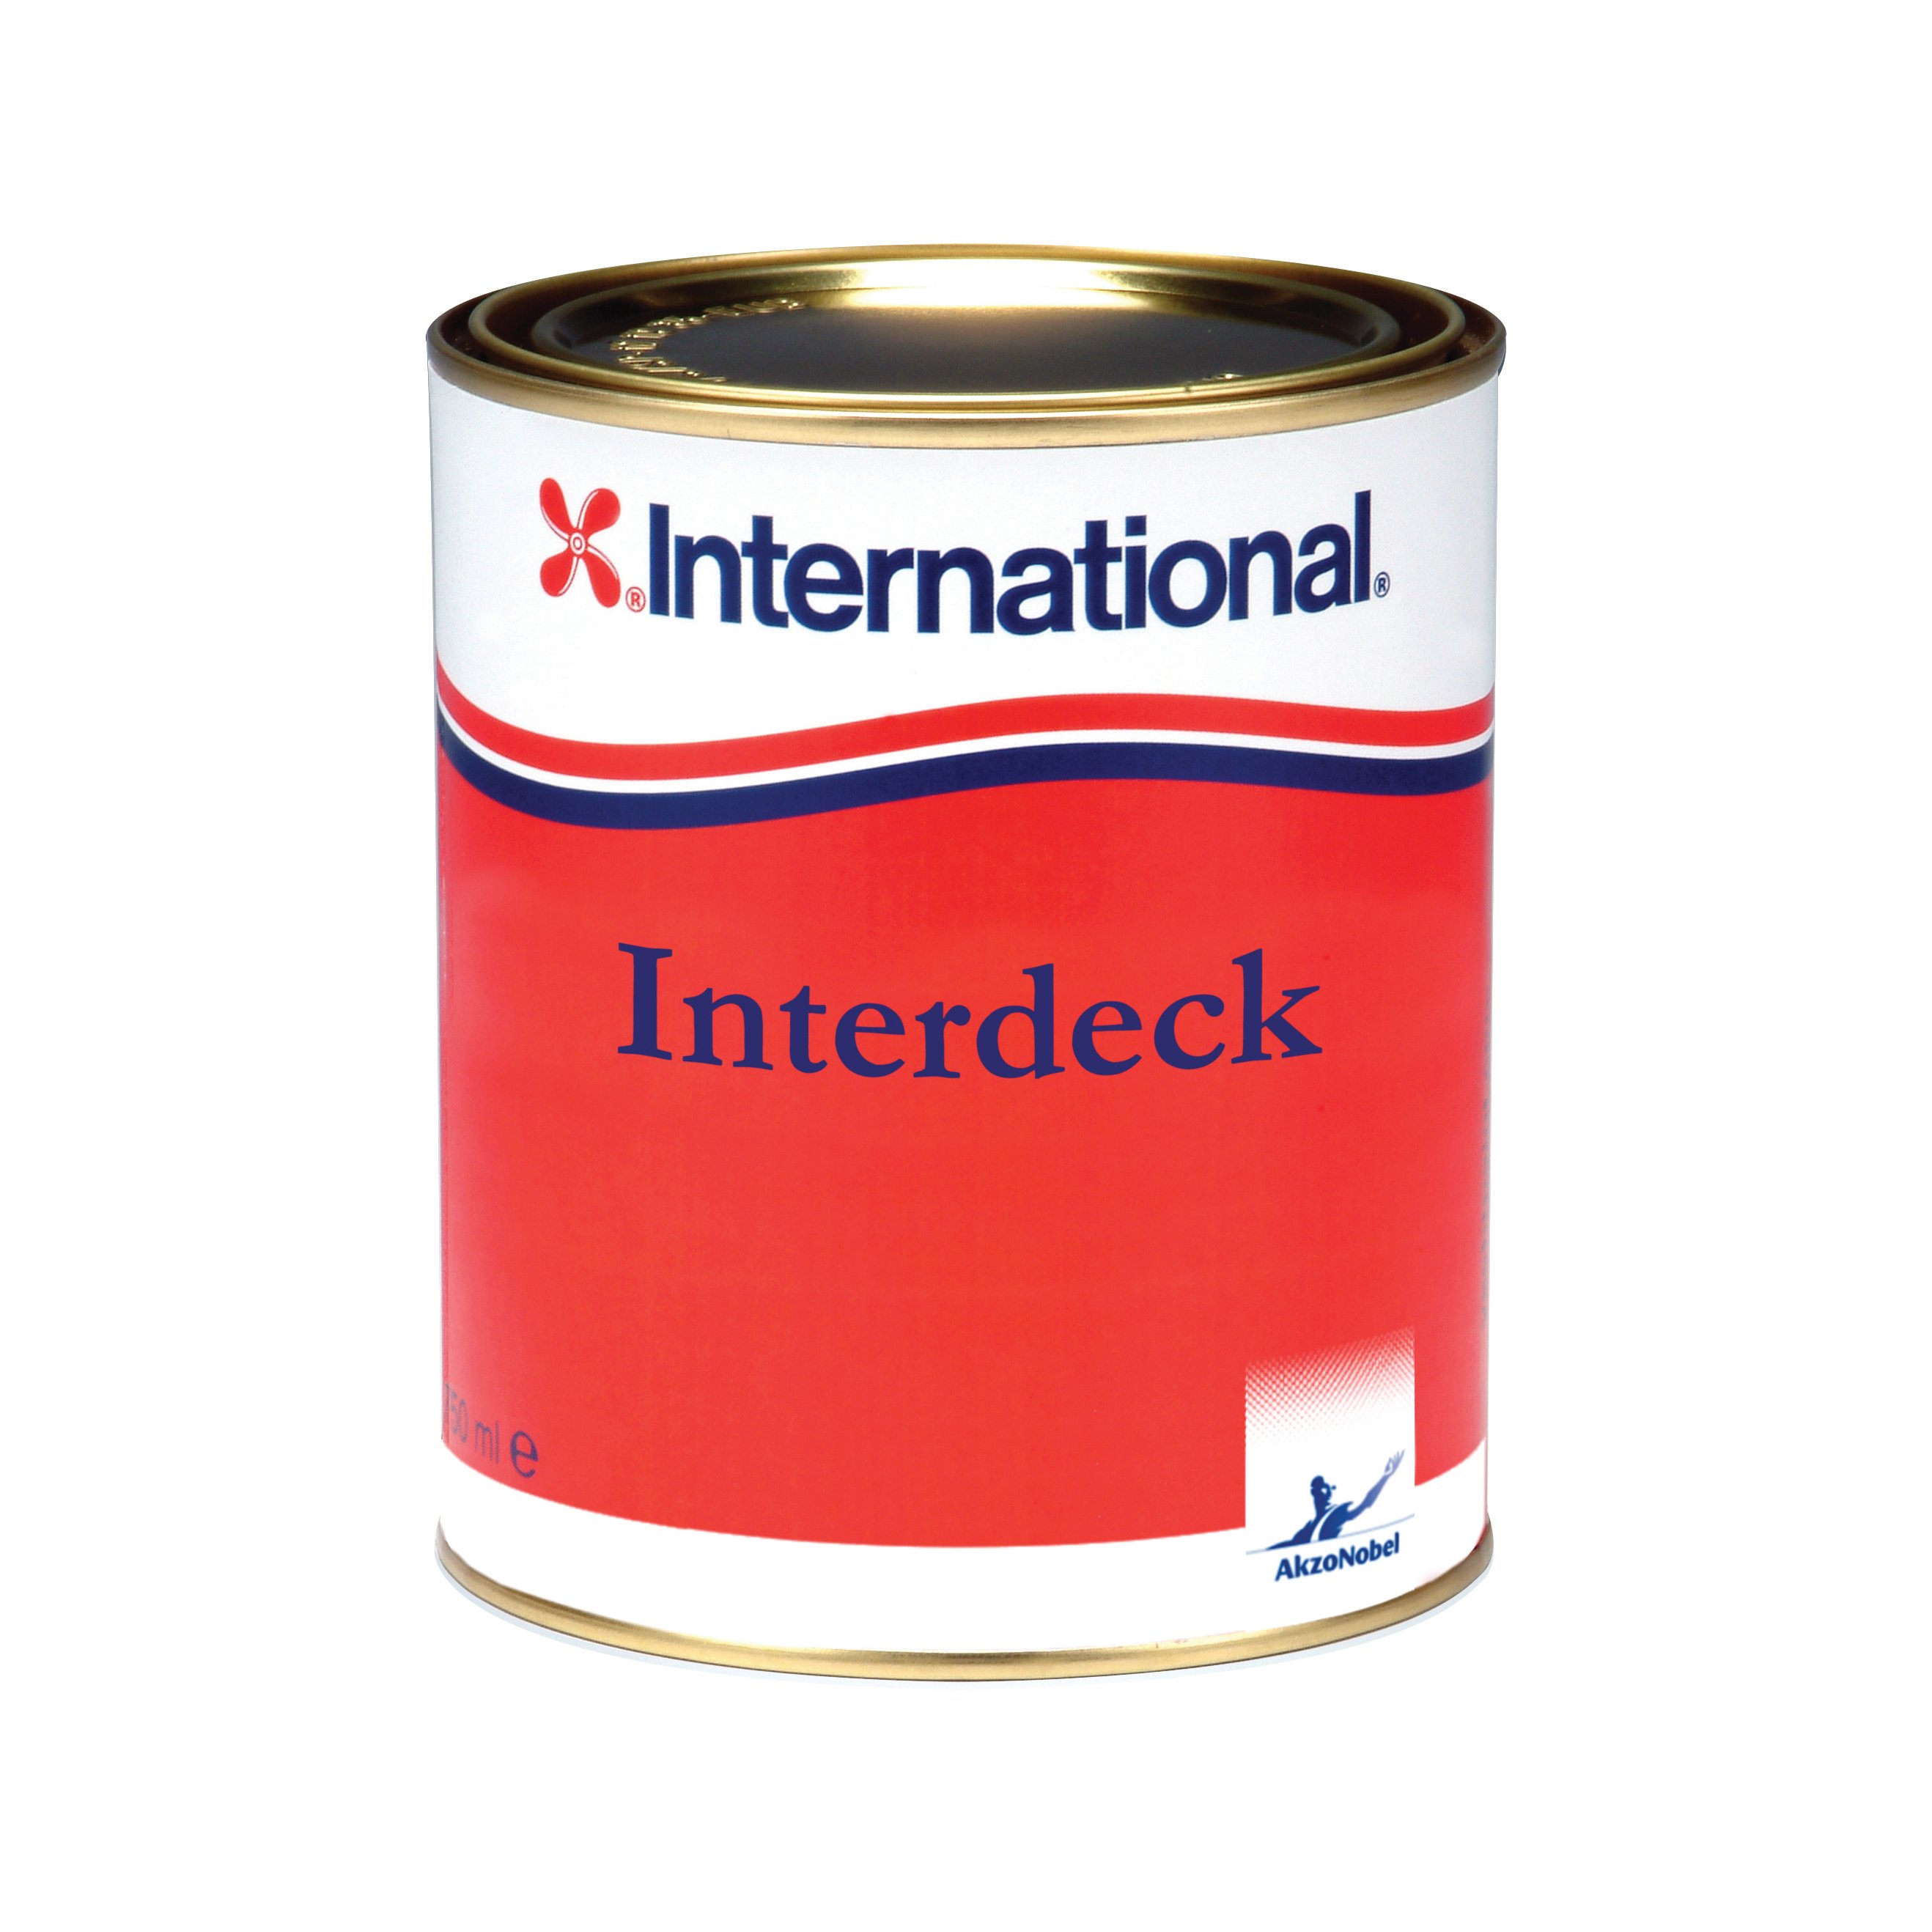 International Interdeck aflak - wit 001, 750ml